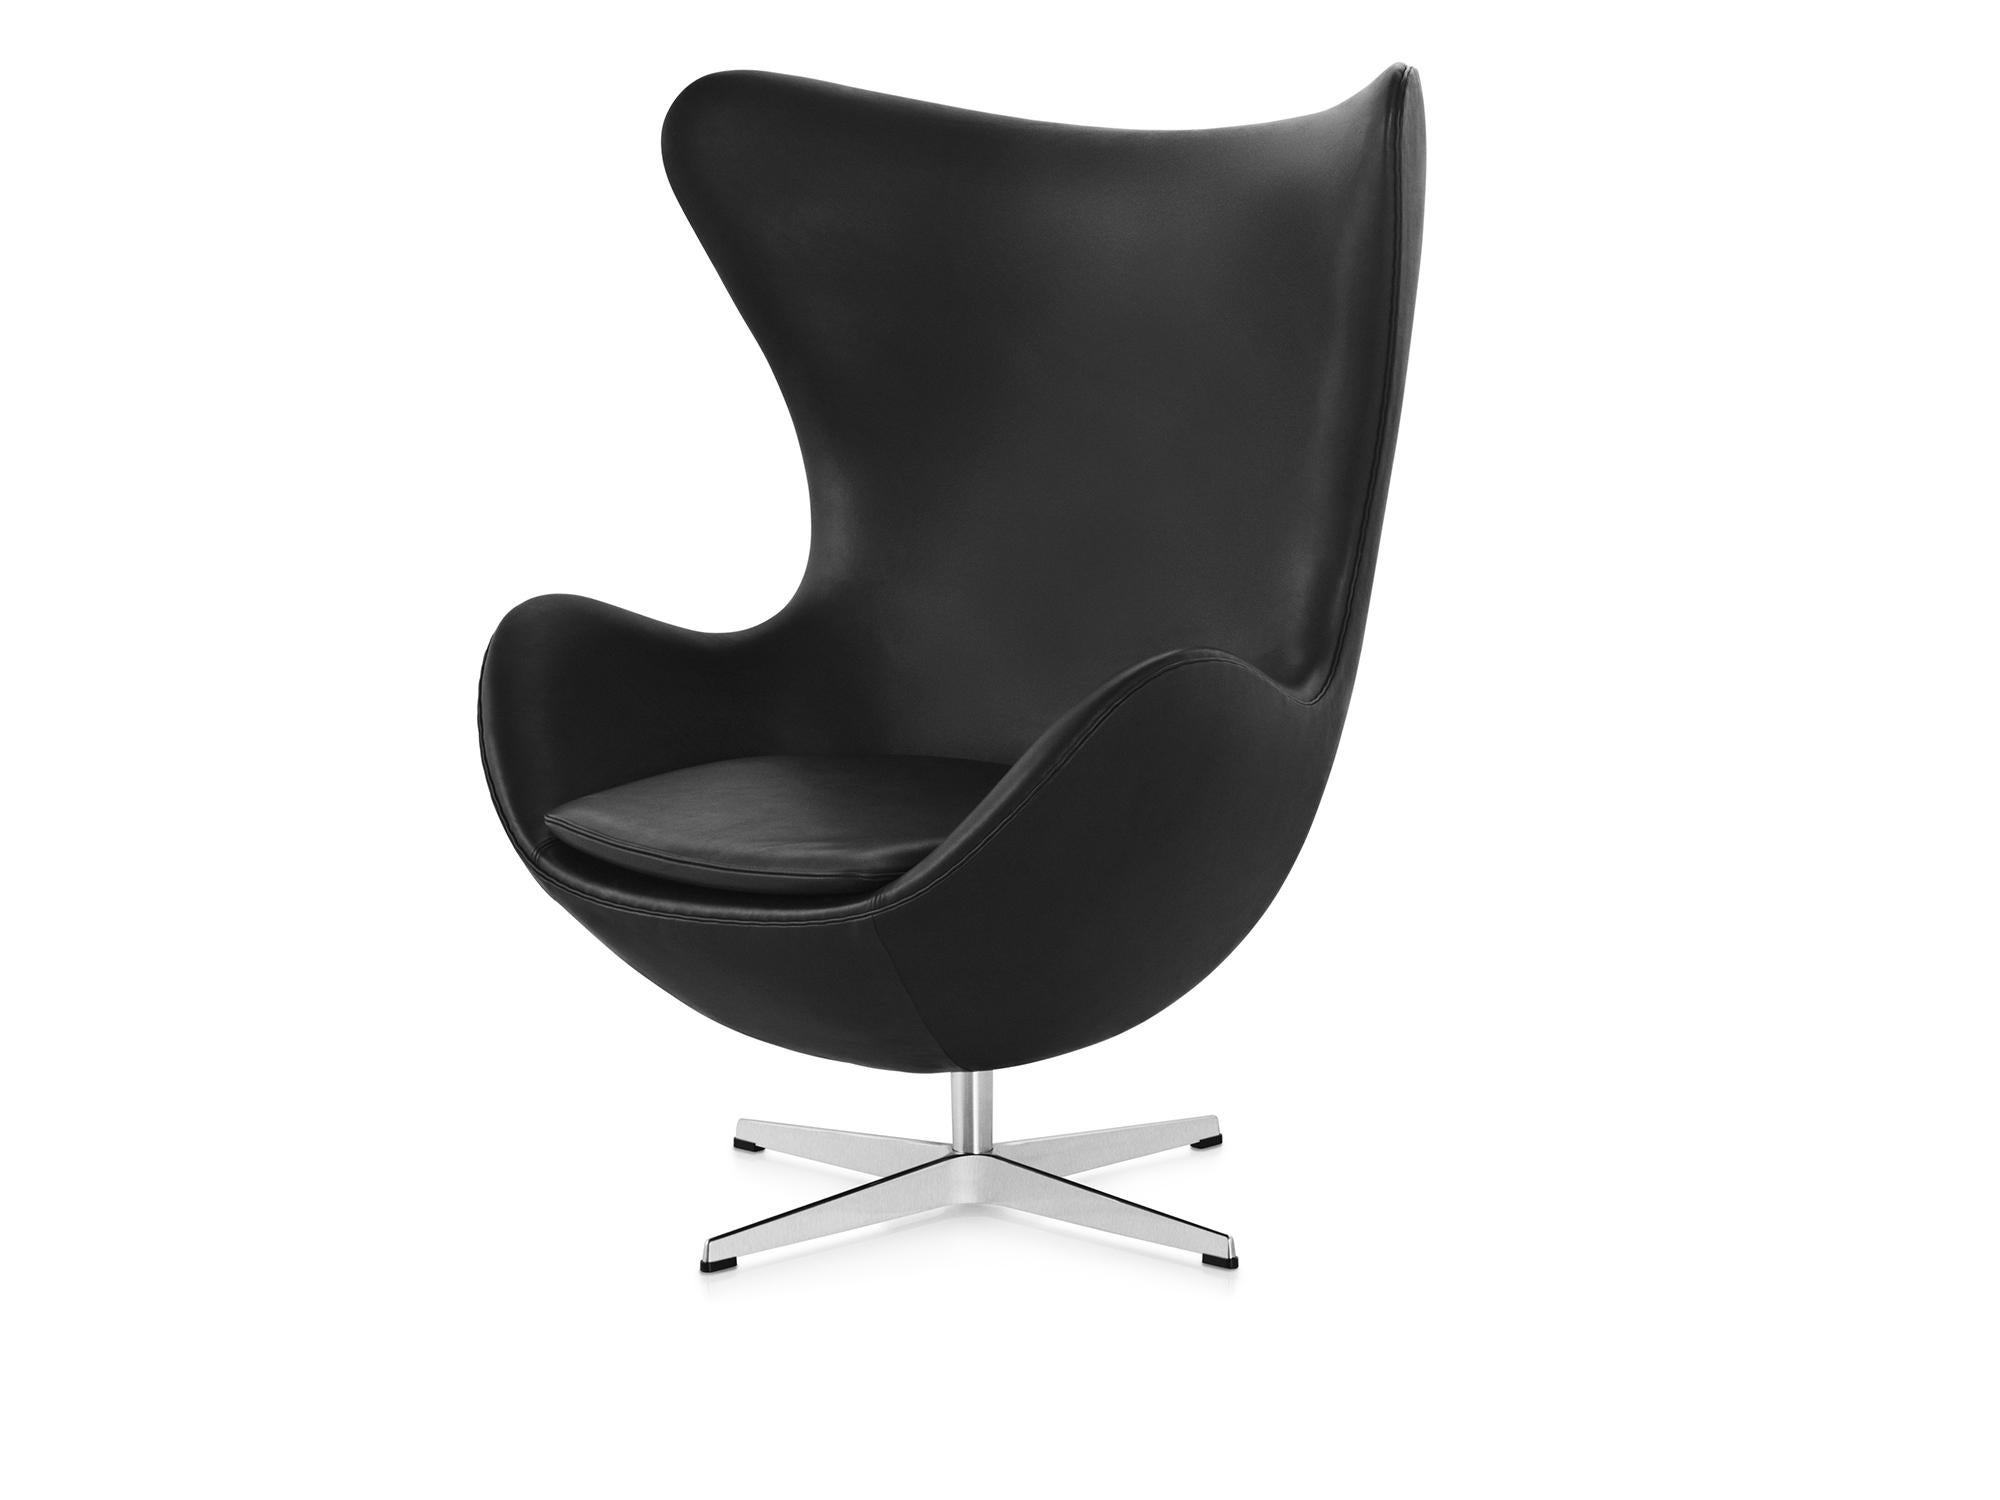 Arne Jacobsen 'Egg' Chair for Fritz Hansen in Leather Upholstery (Cat. 5) For Sale 4